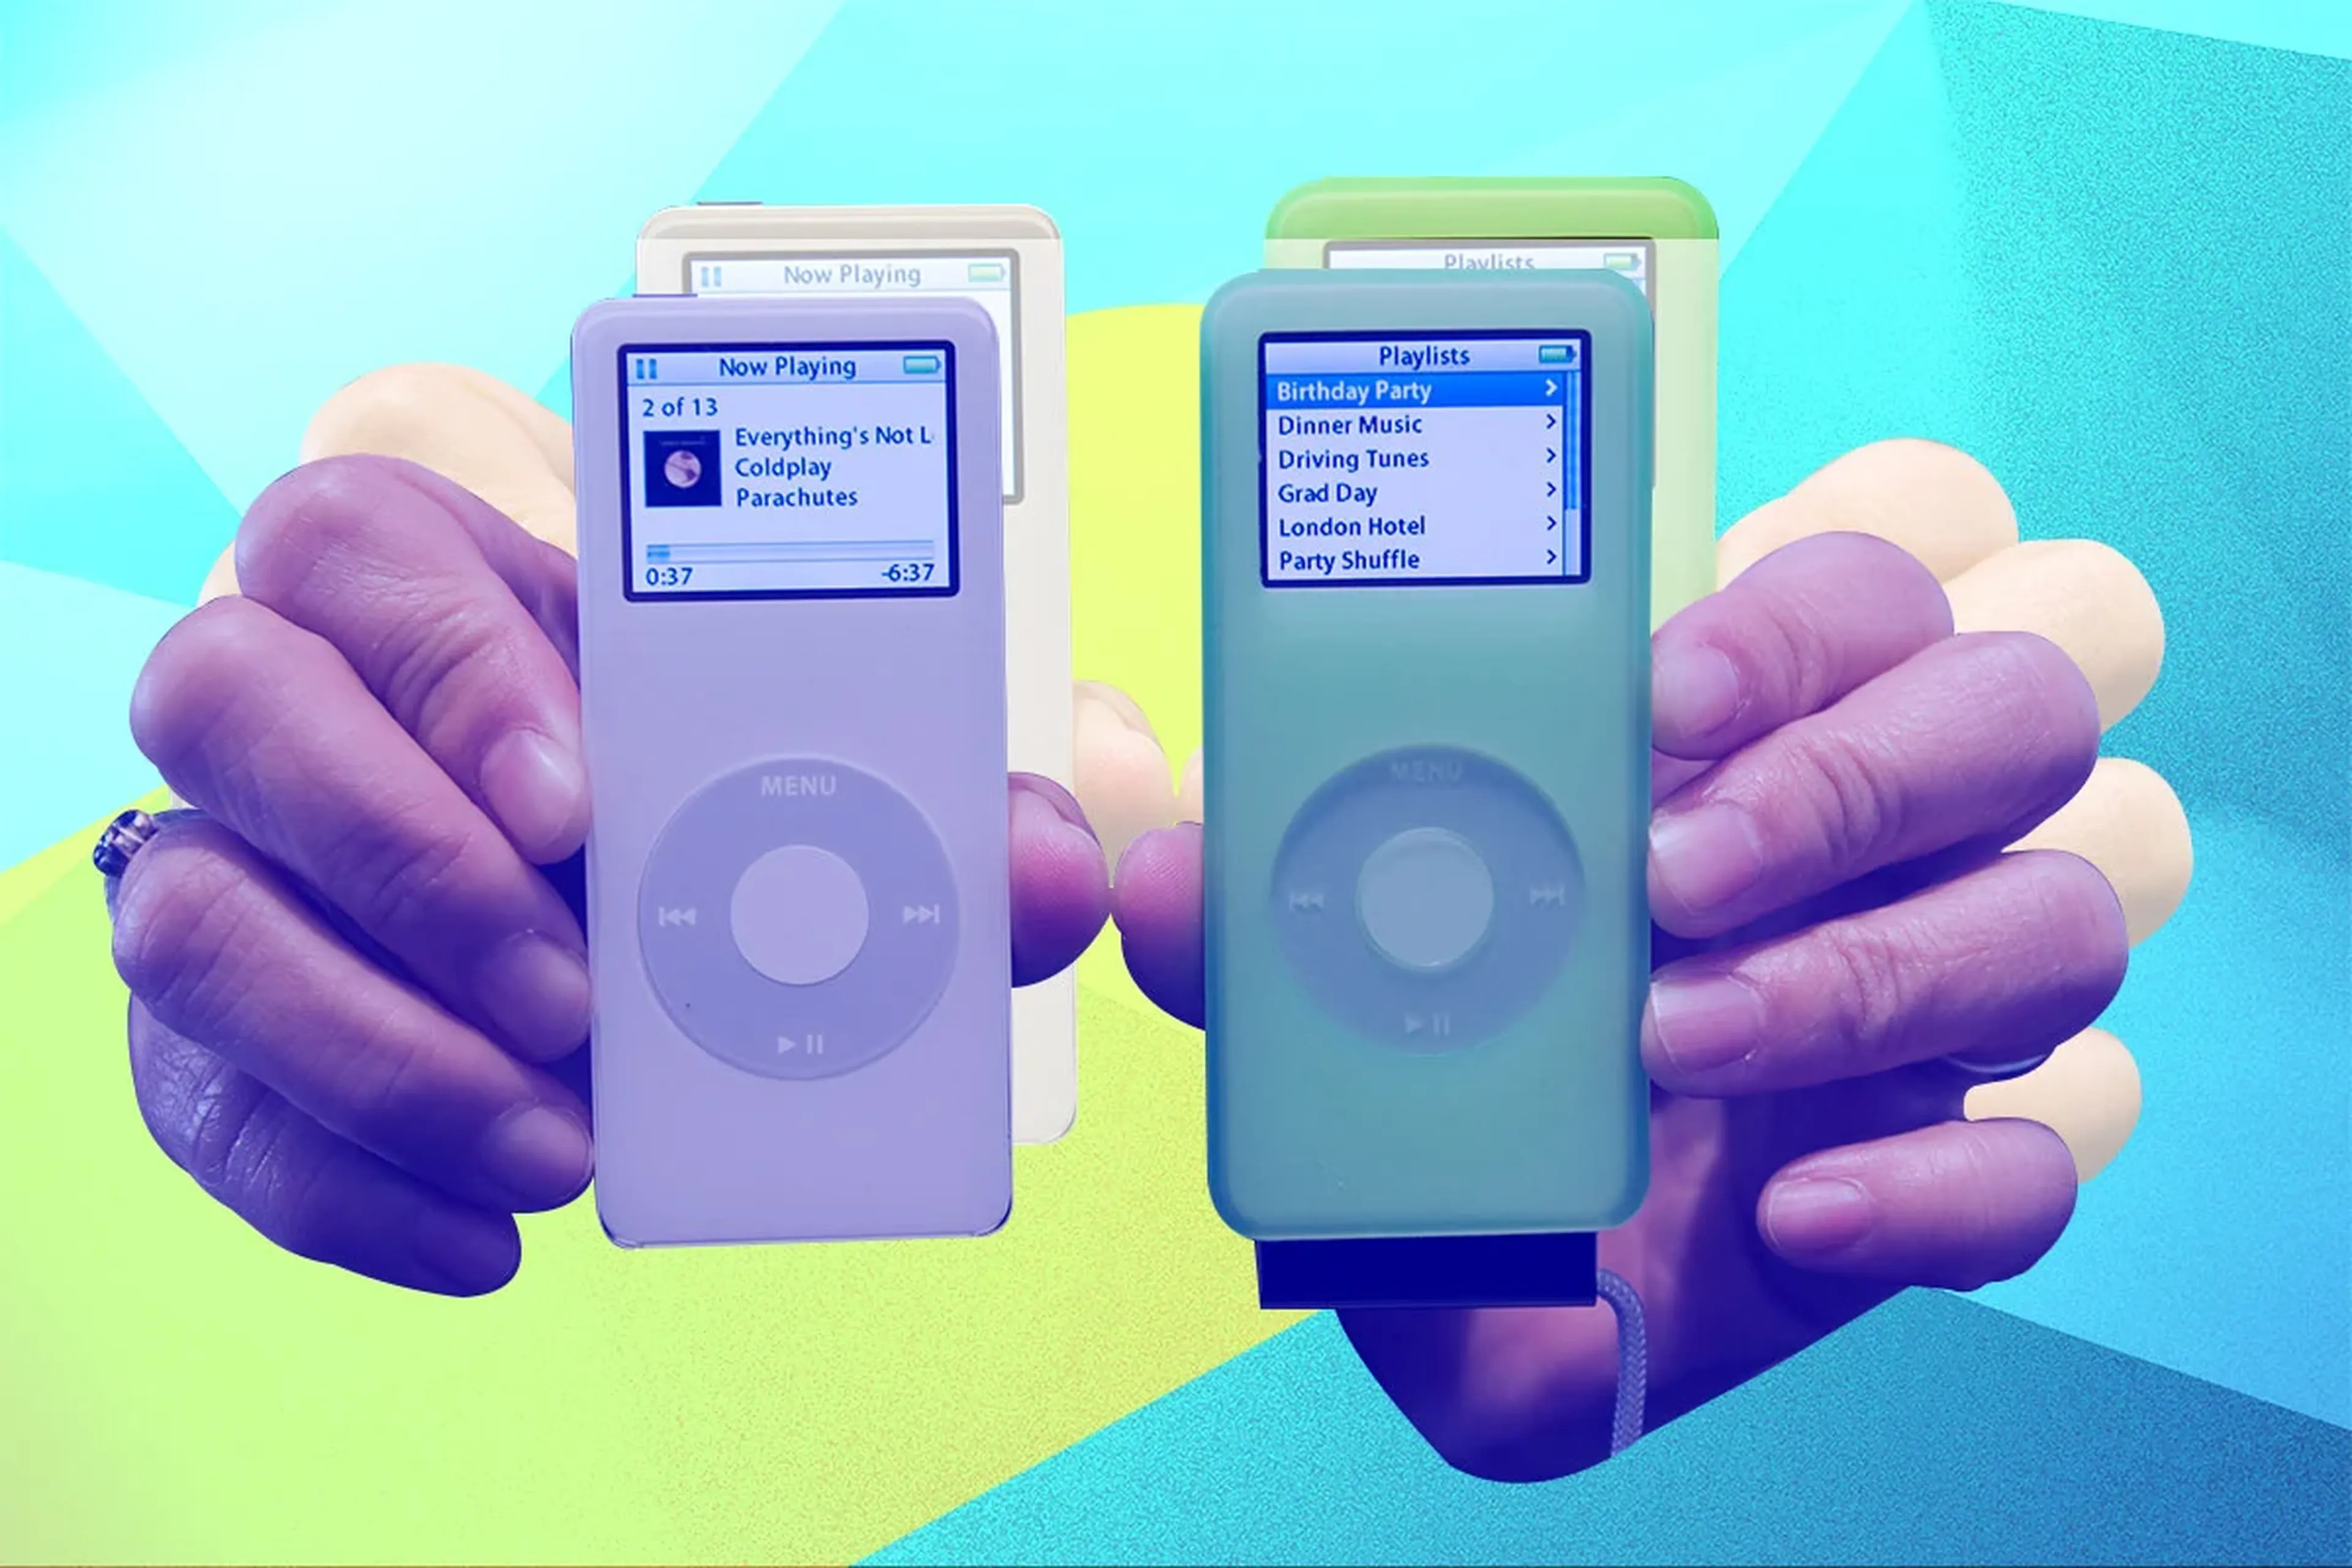 iPod nano (2005)